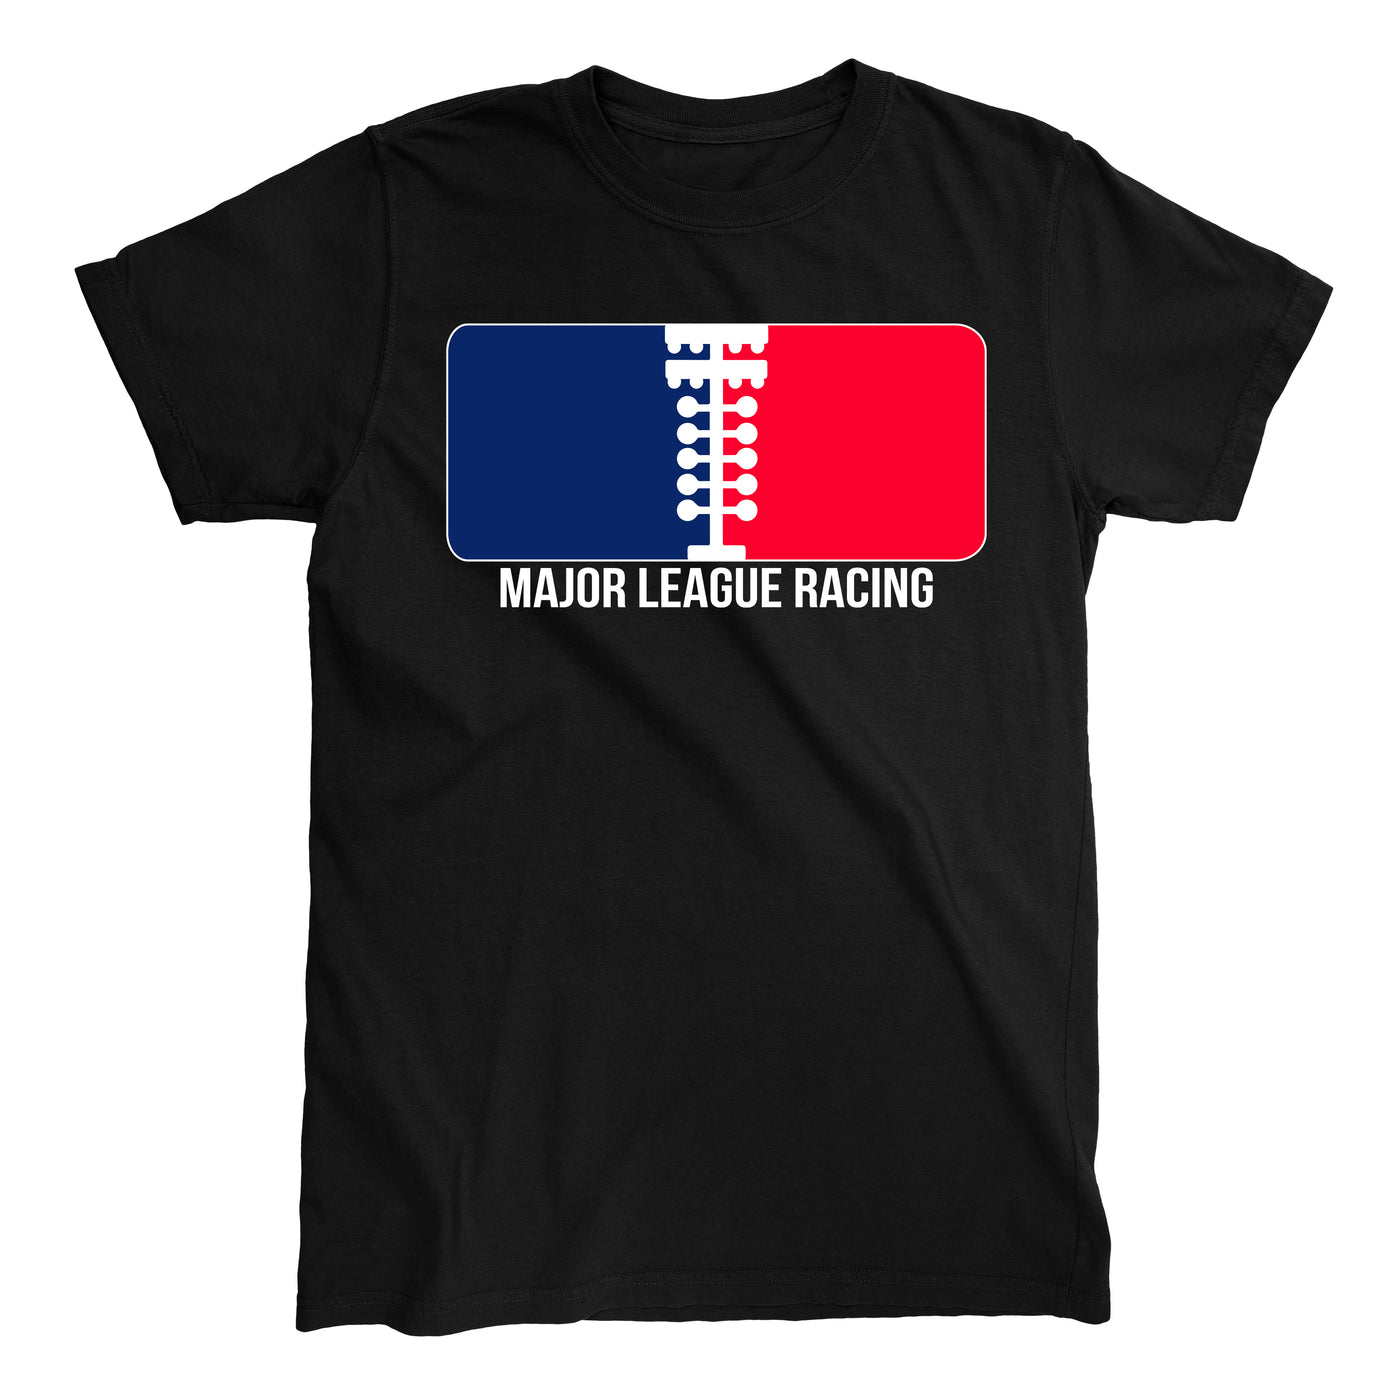 MAJOR LEAGUE RACING T-shirt